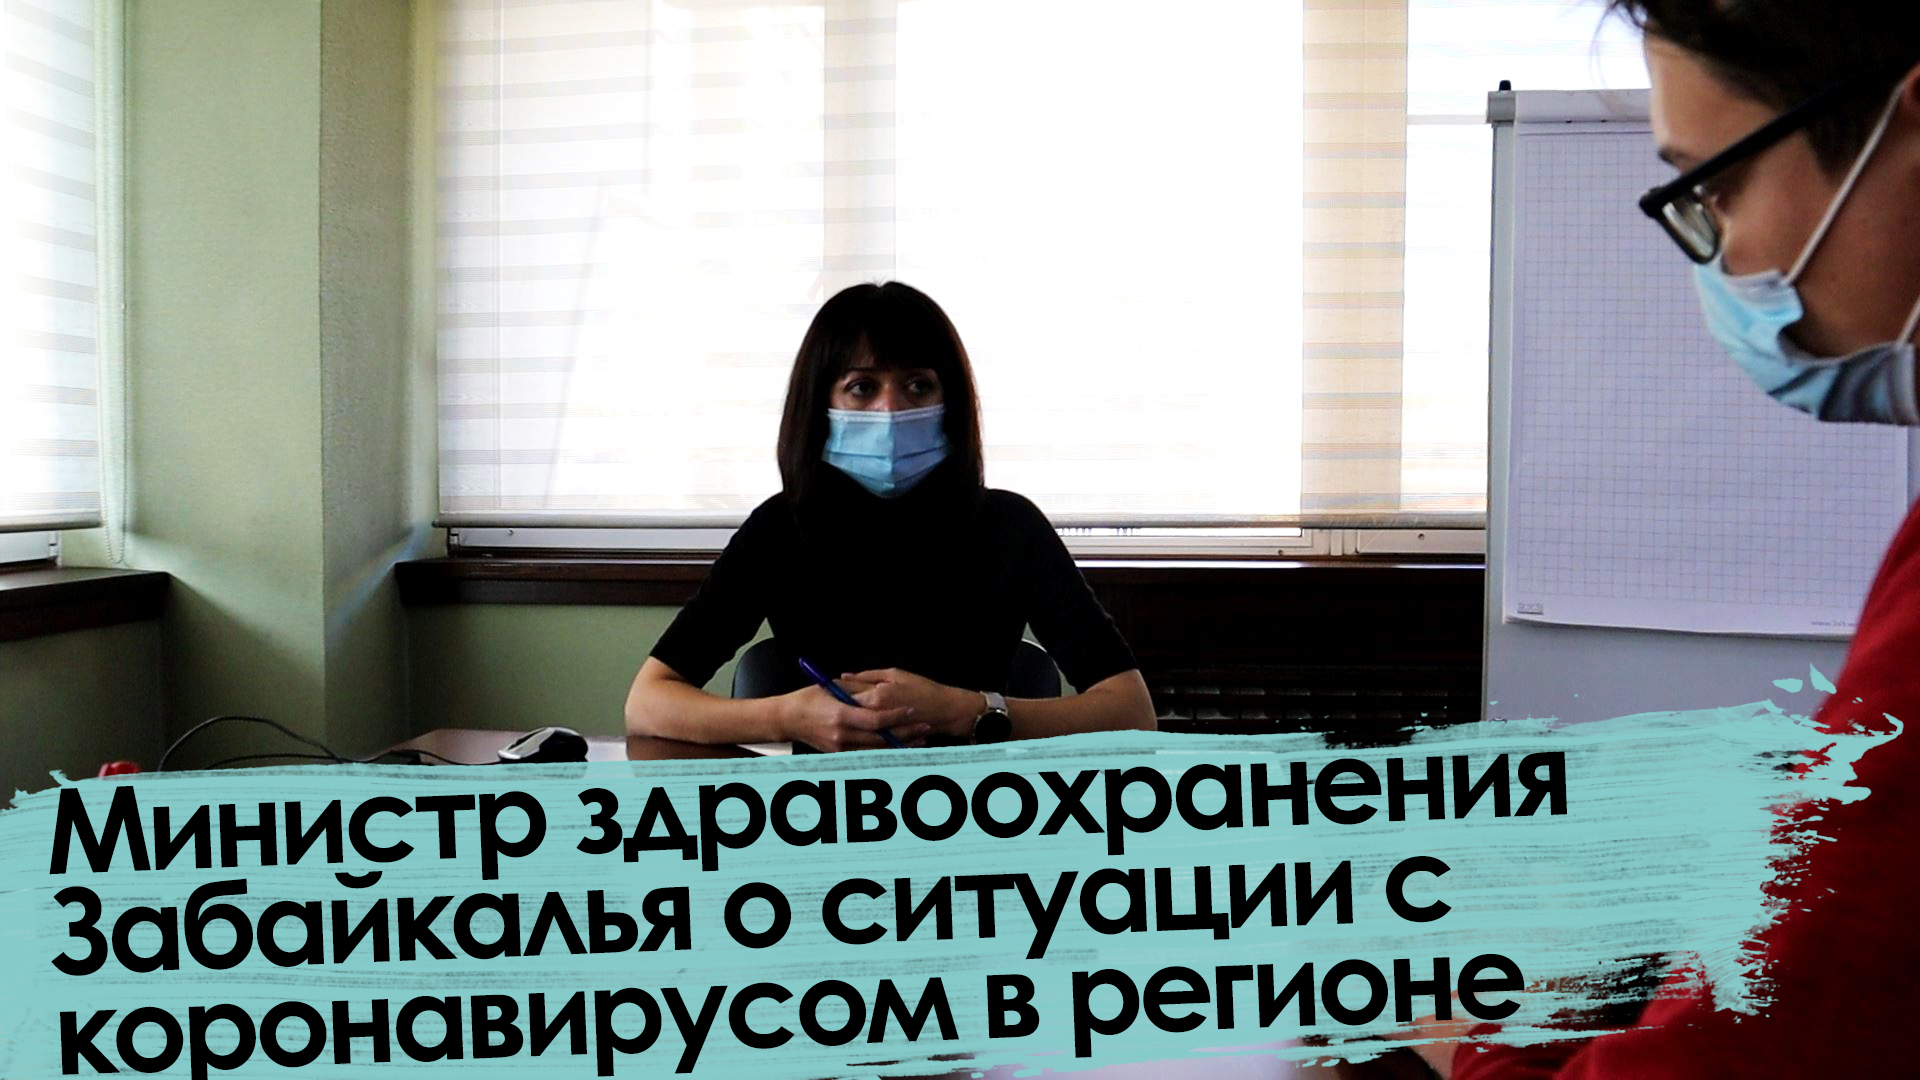 Вечорка ТВ: Министр здравоохранения Забайкалья о ситуации с коронавирусом в регионе